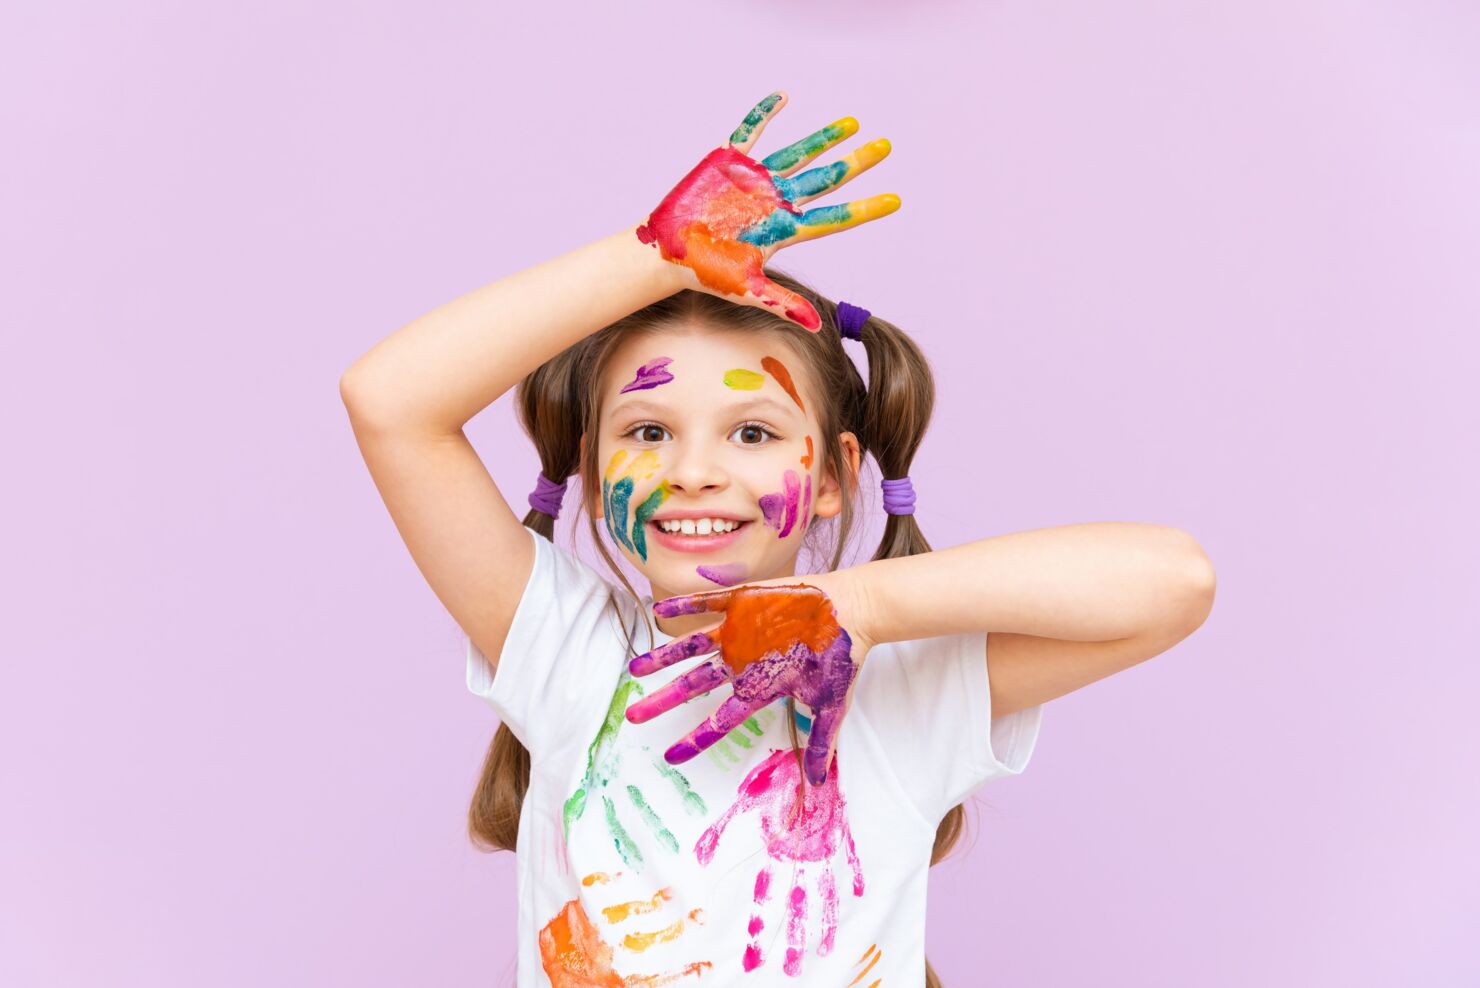 Ein Mädchen hat mehrere Handabdrücke aus Farben an ihrem Gesicht und T-Shirt